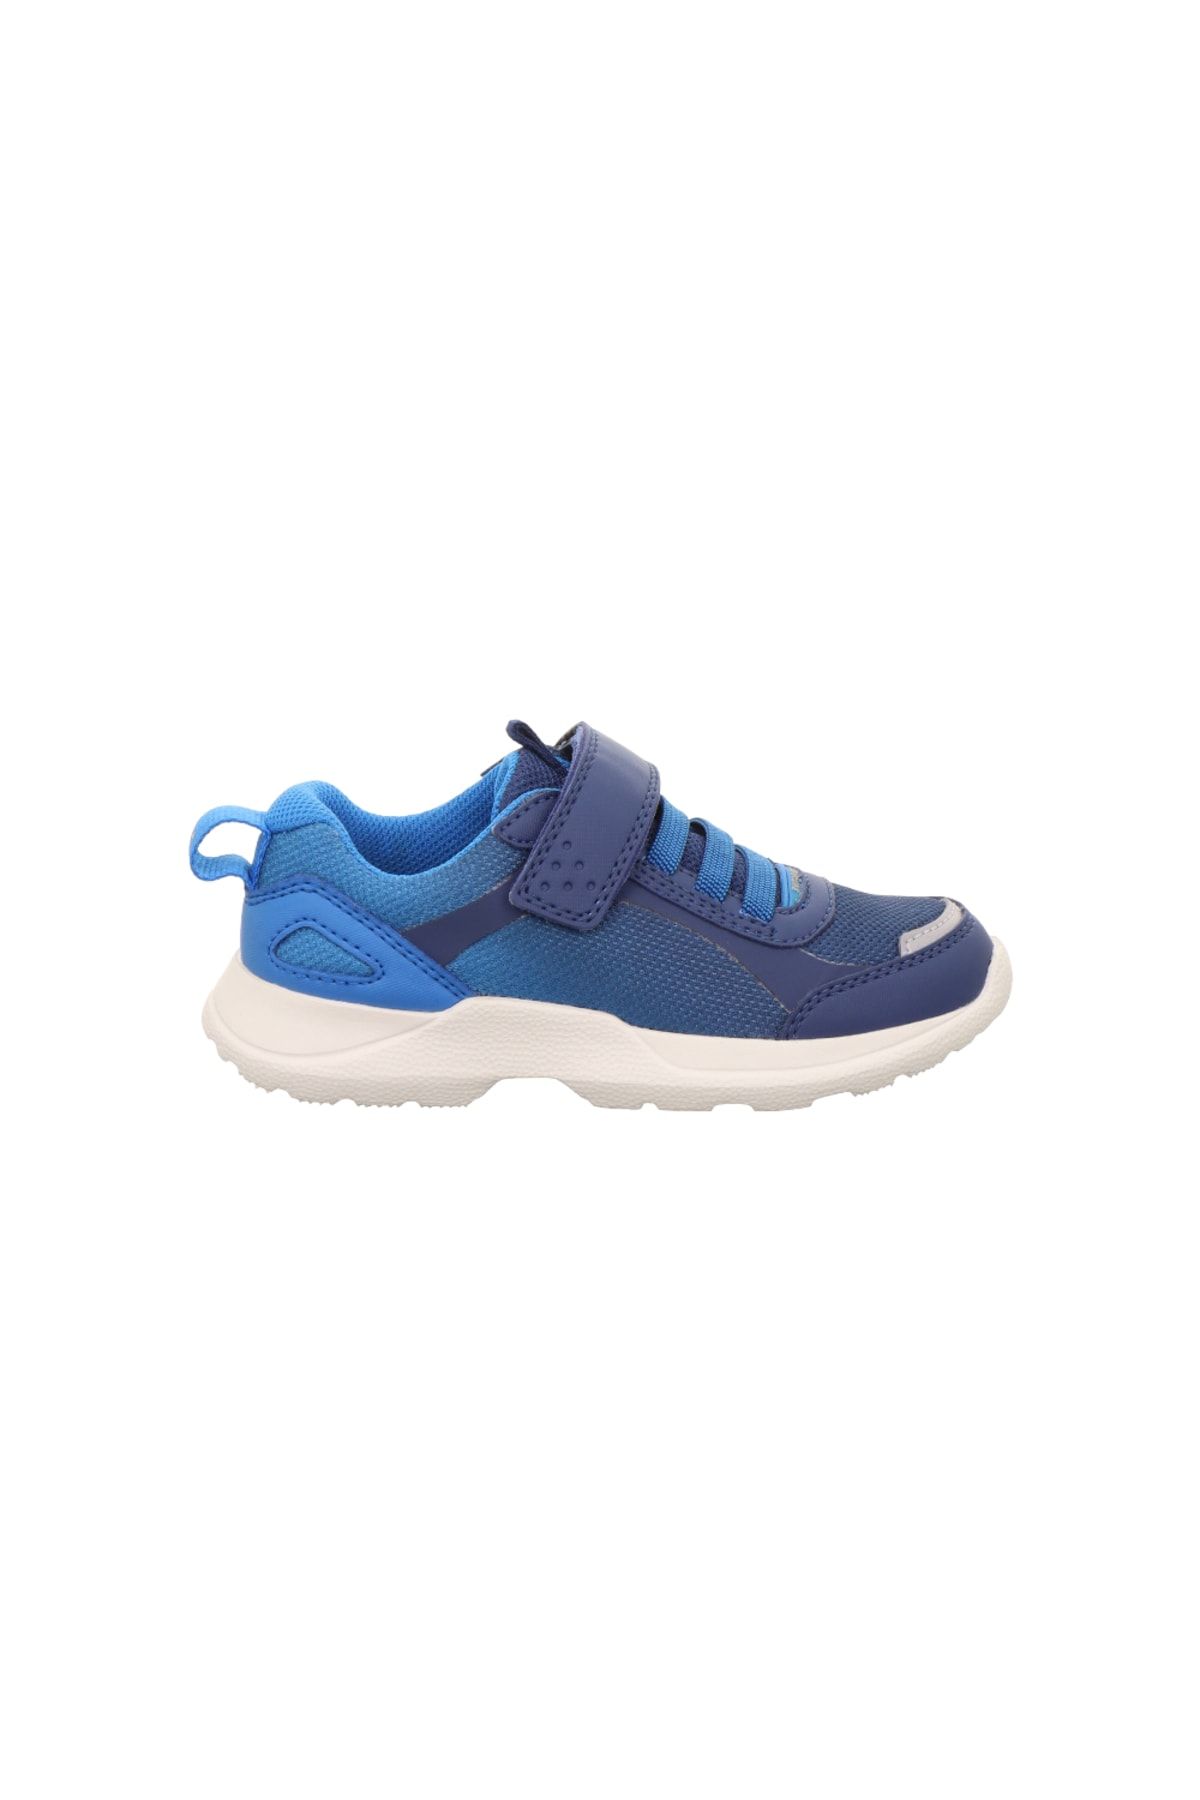 Superfit Rush Lastikli, Cırtlı Spor Ayakkabı, (medium/orta), Mavi Lacivert Kumaş